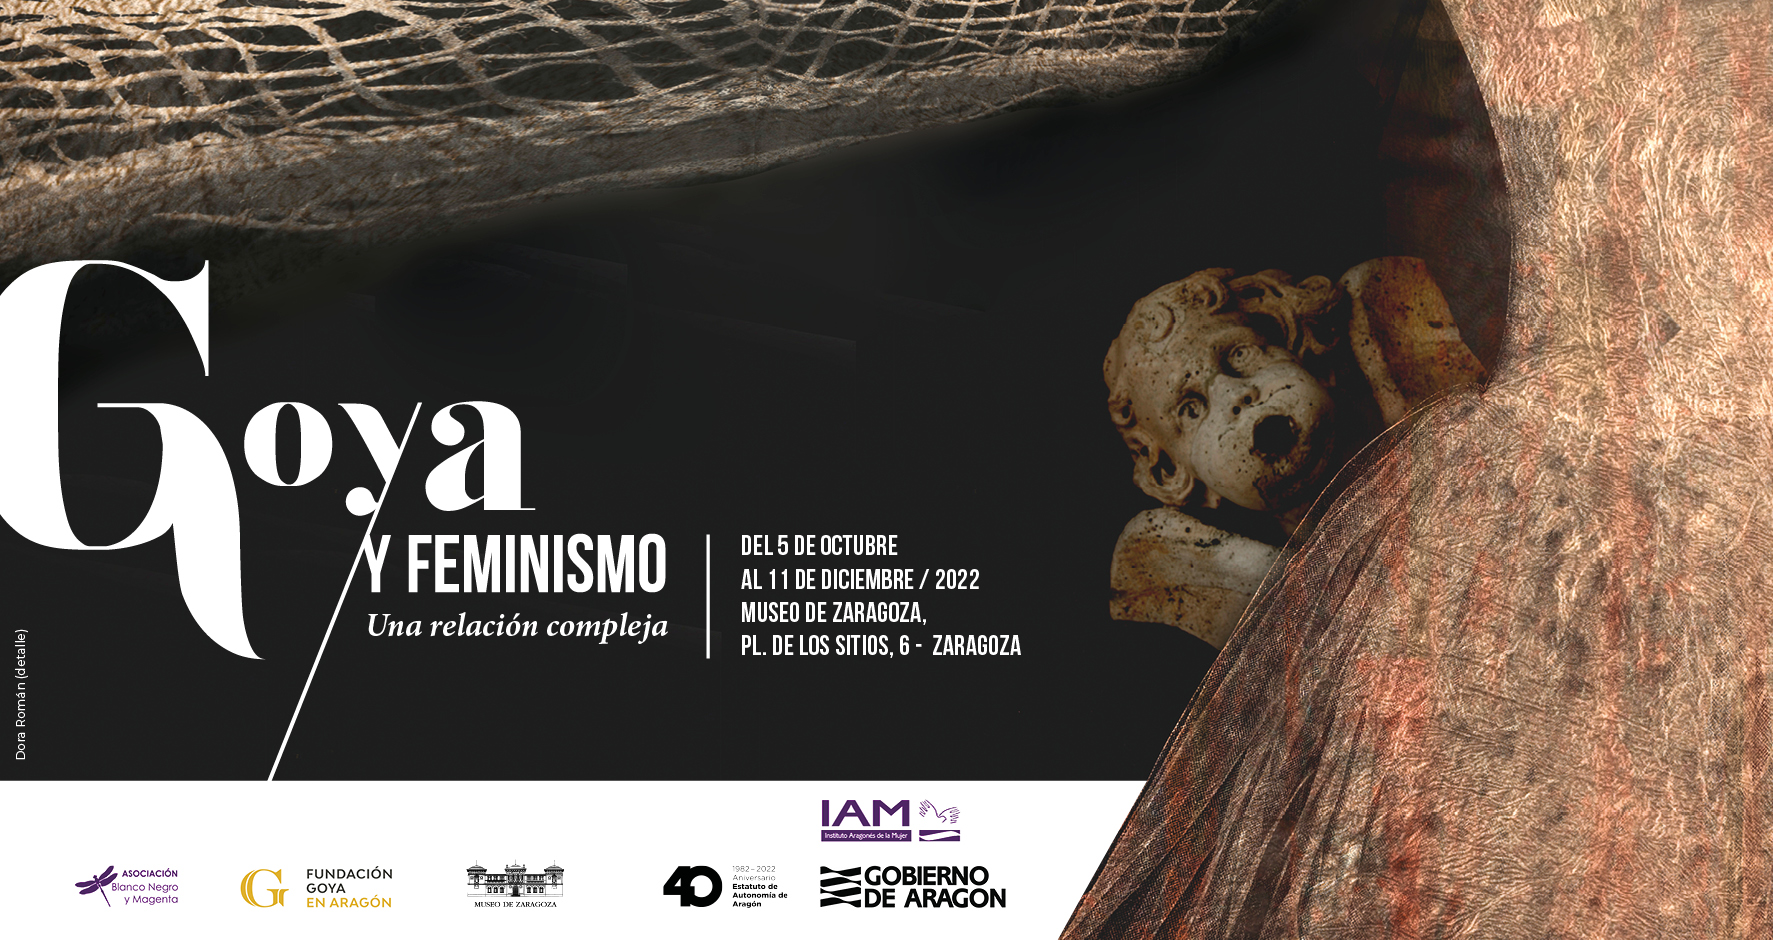 Goya y feminismo. Una relación compleja